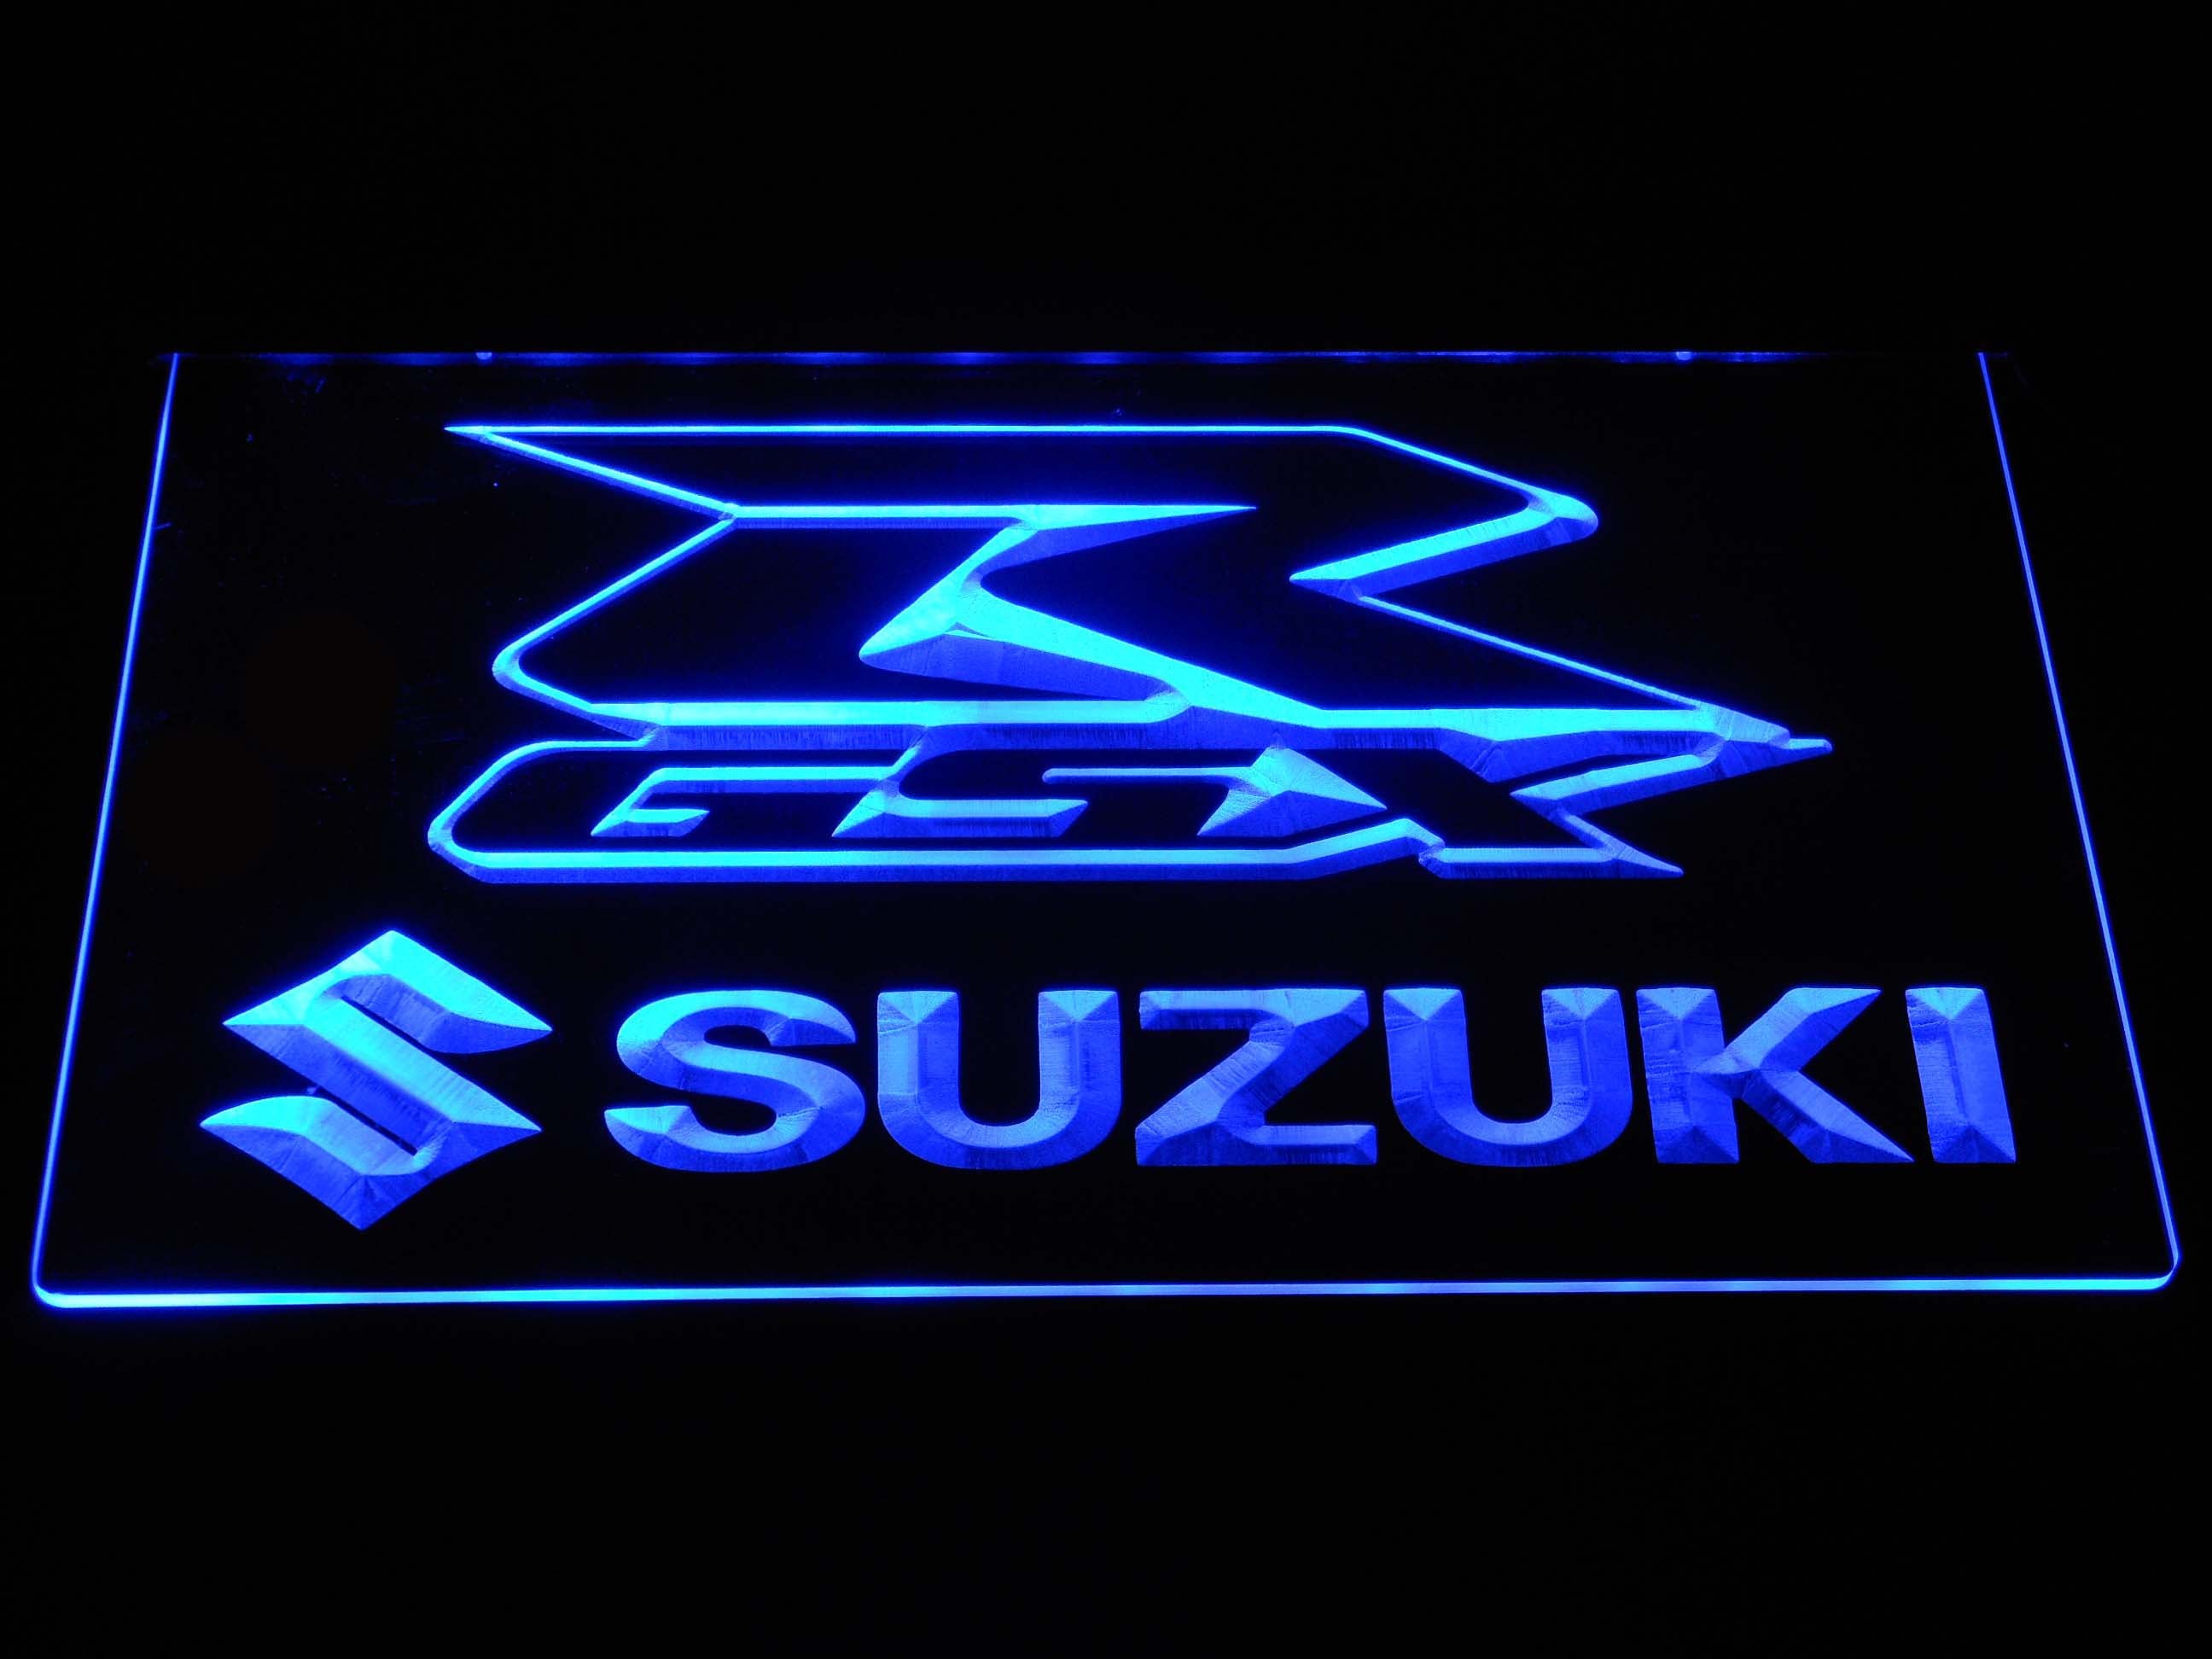 Suzuki Gsx-R Motorcycle Neon Sign